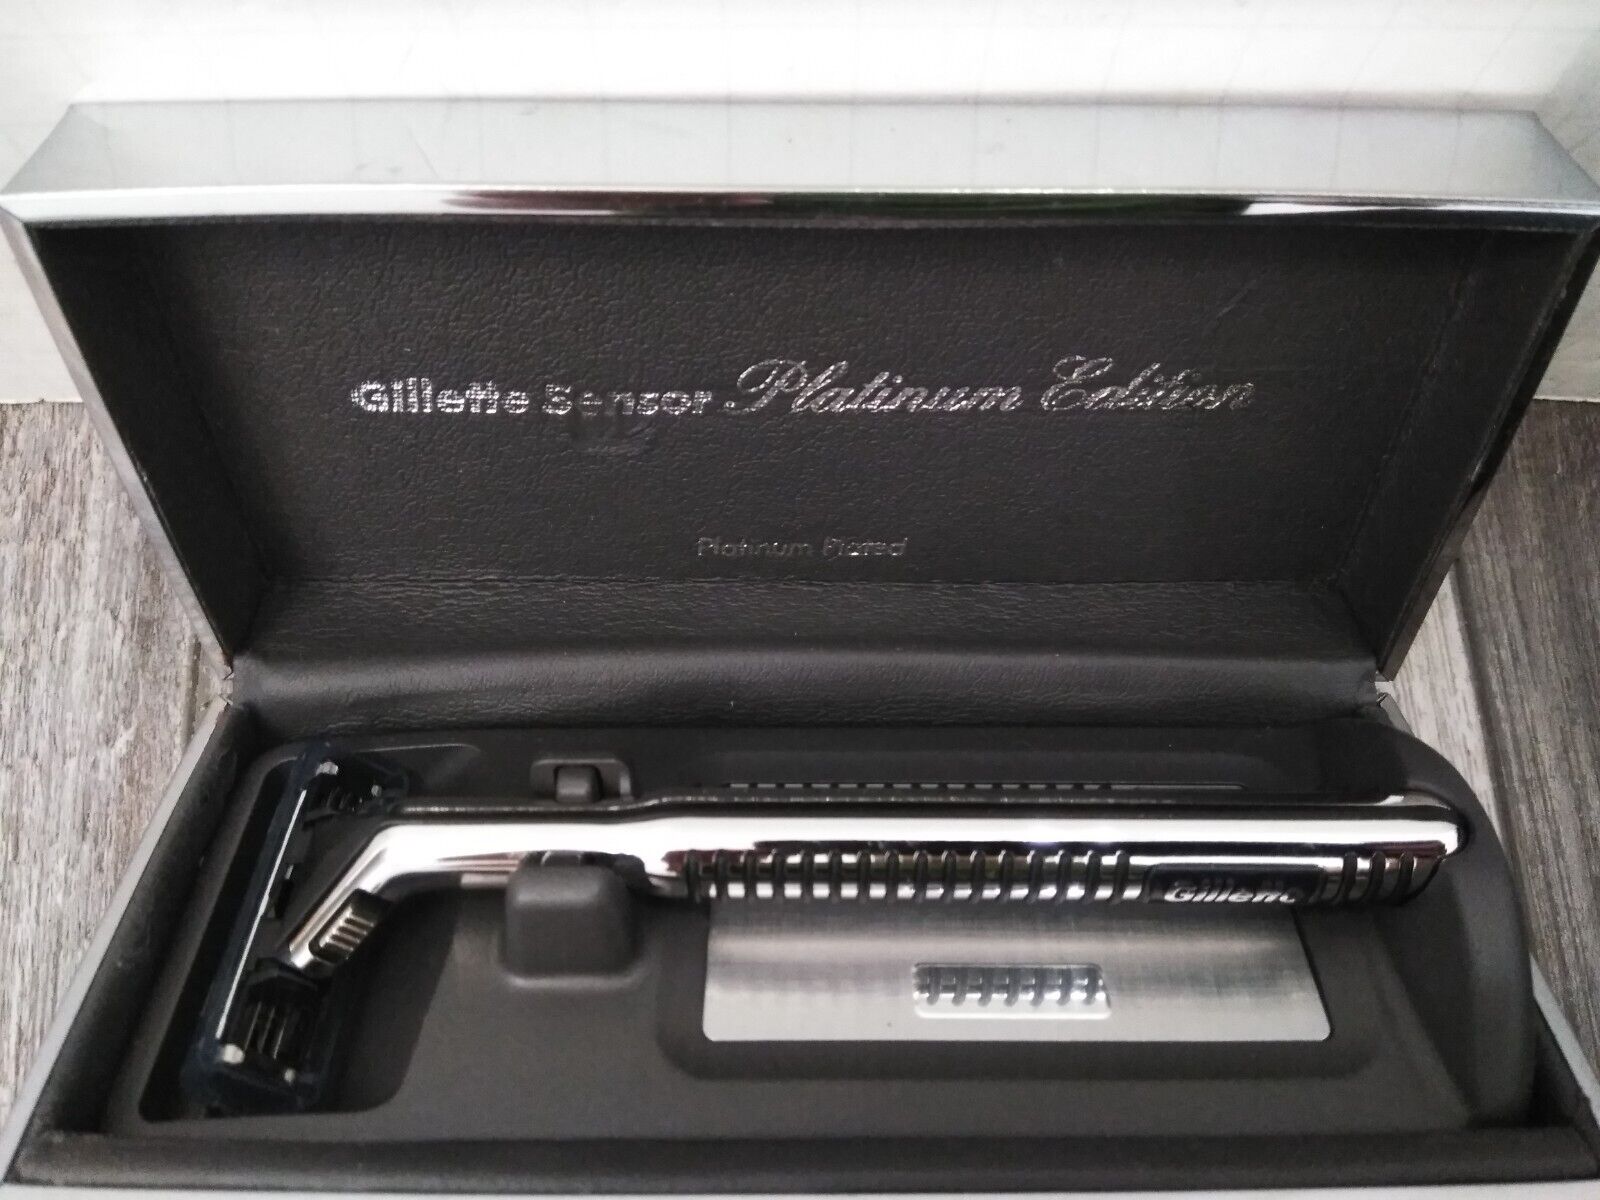 VTG 1989 Gillette Sensor Razor Metal handle platinum edition 6-cartridges & case